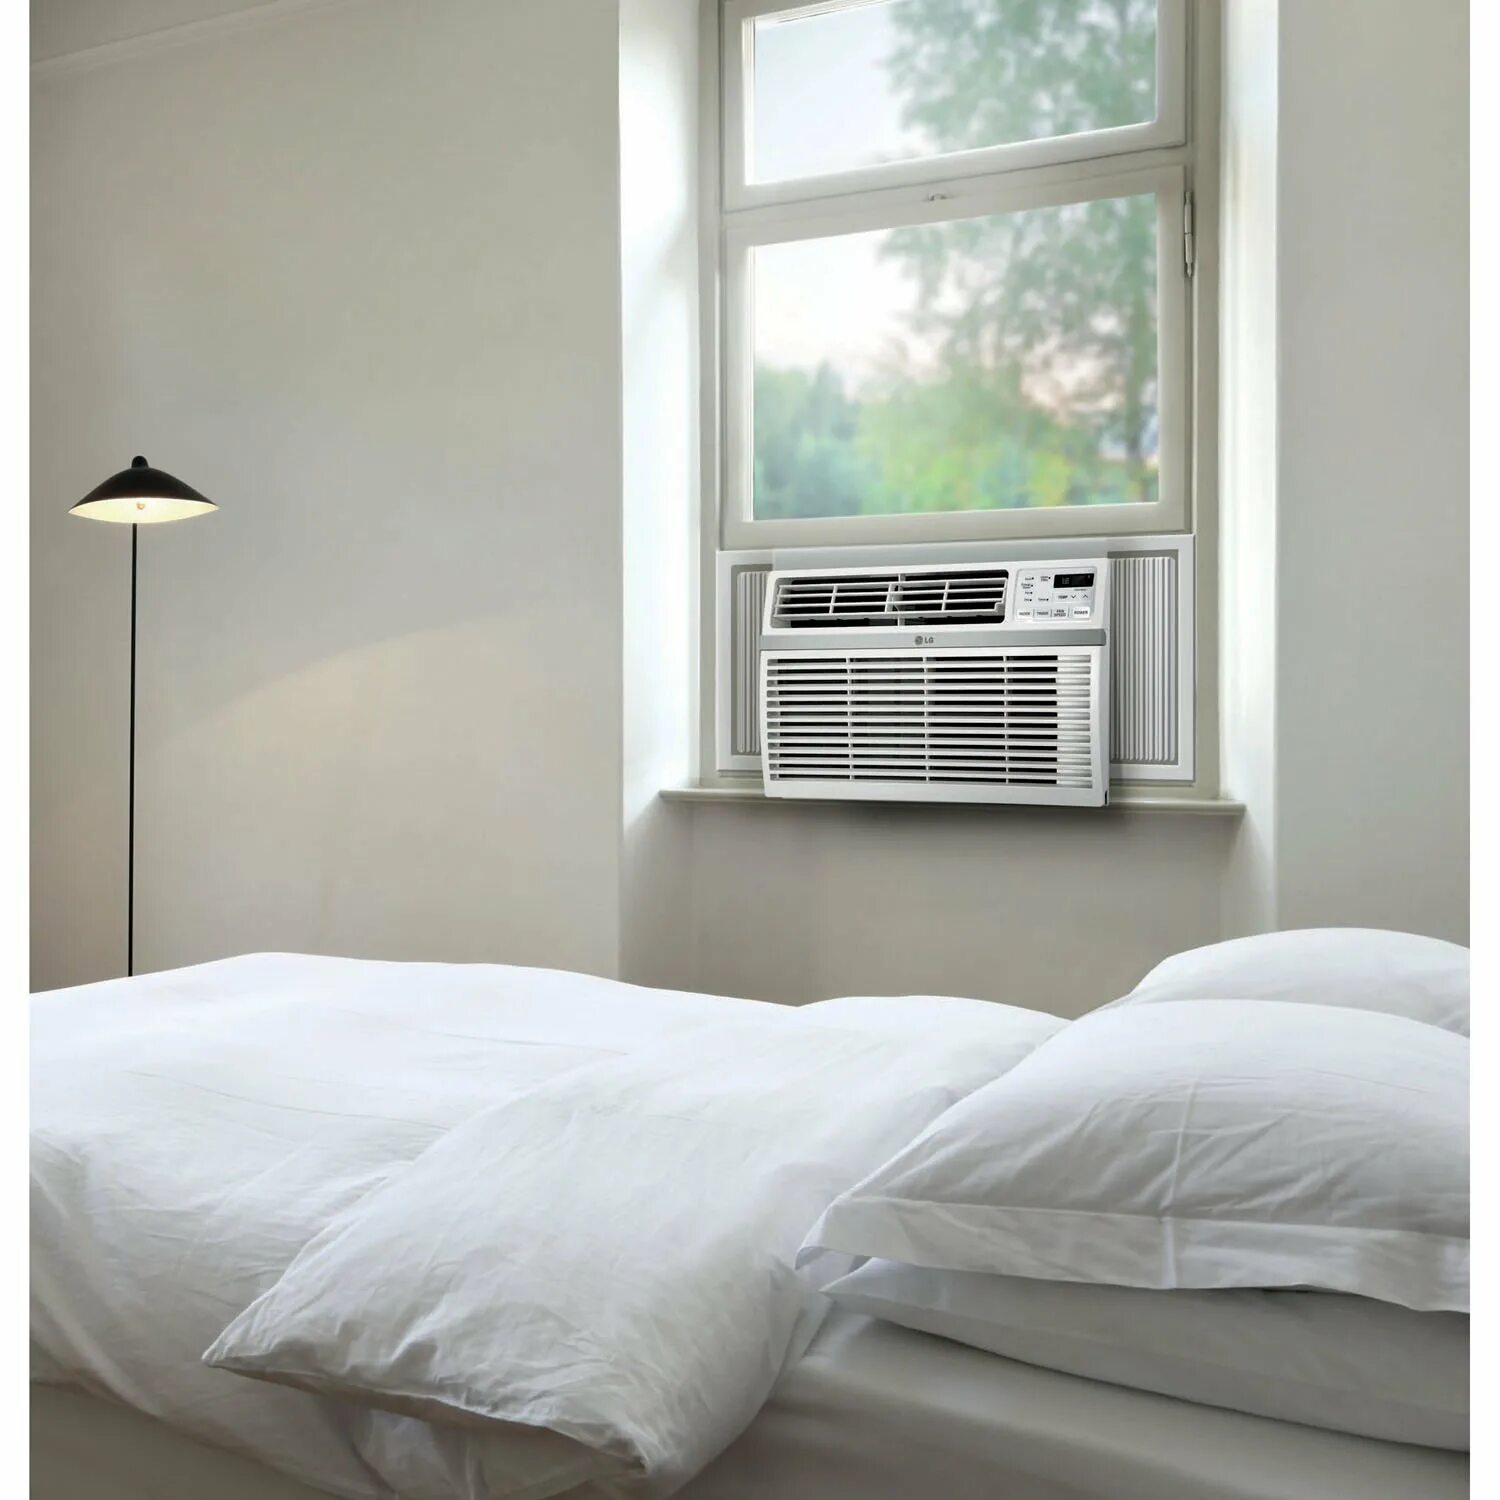 Дом сплит отзывы. Кондиционер LG Room Air Conditioner. Оконный кондиционер LG LW-n2460bhg. Оконный кондиционер Axioma asjc09-nm1a. LG Window Room Air Conditioner model LW C 0961hl.